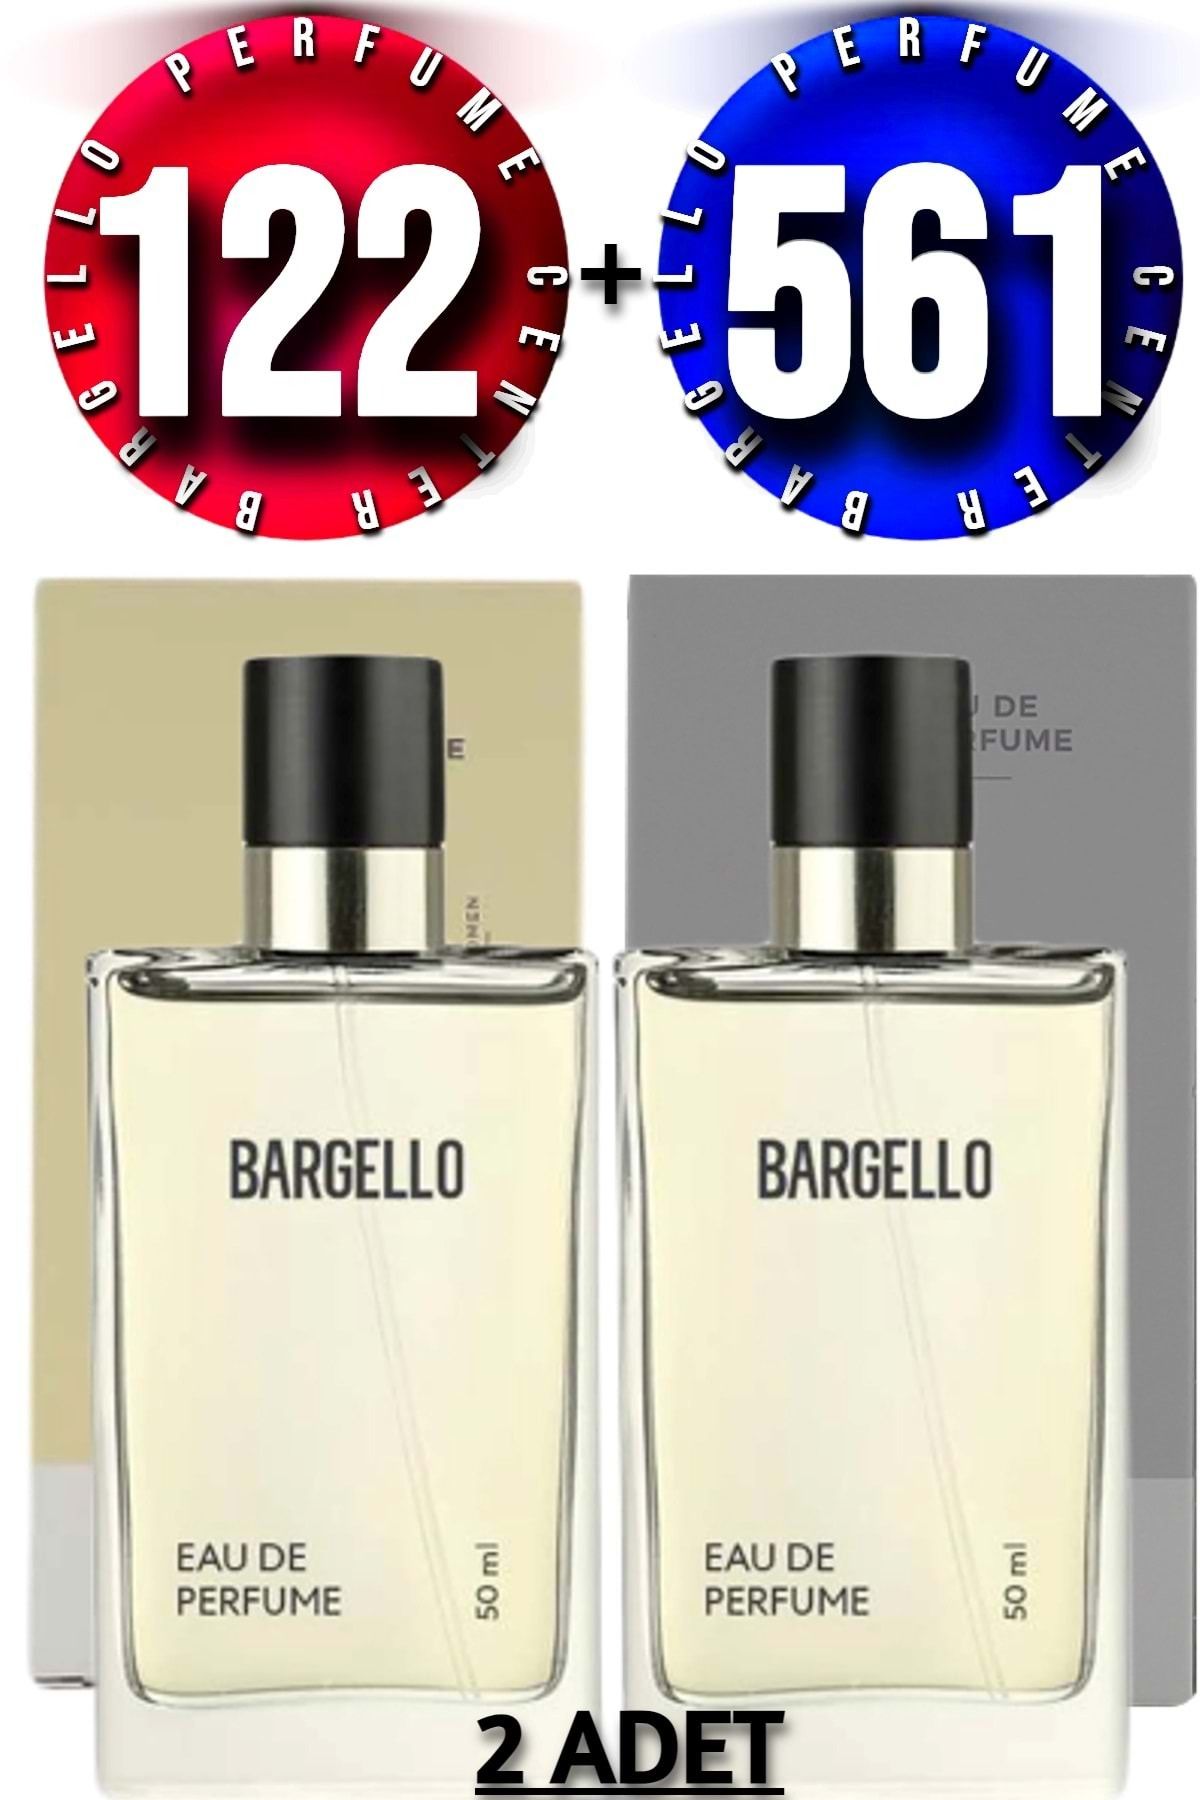 Bargello 122 Oriental Kadın Parfüm 50 ml Edp 561 Fresh Erkek Parfüm 50 ml Edp